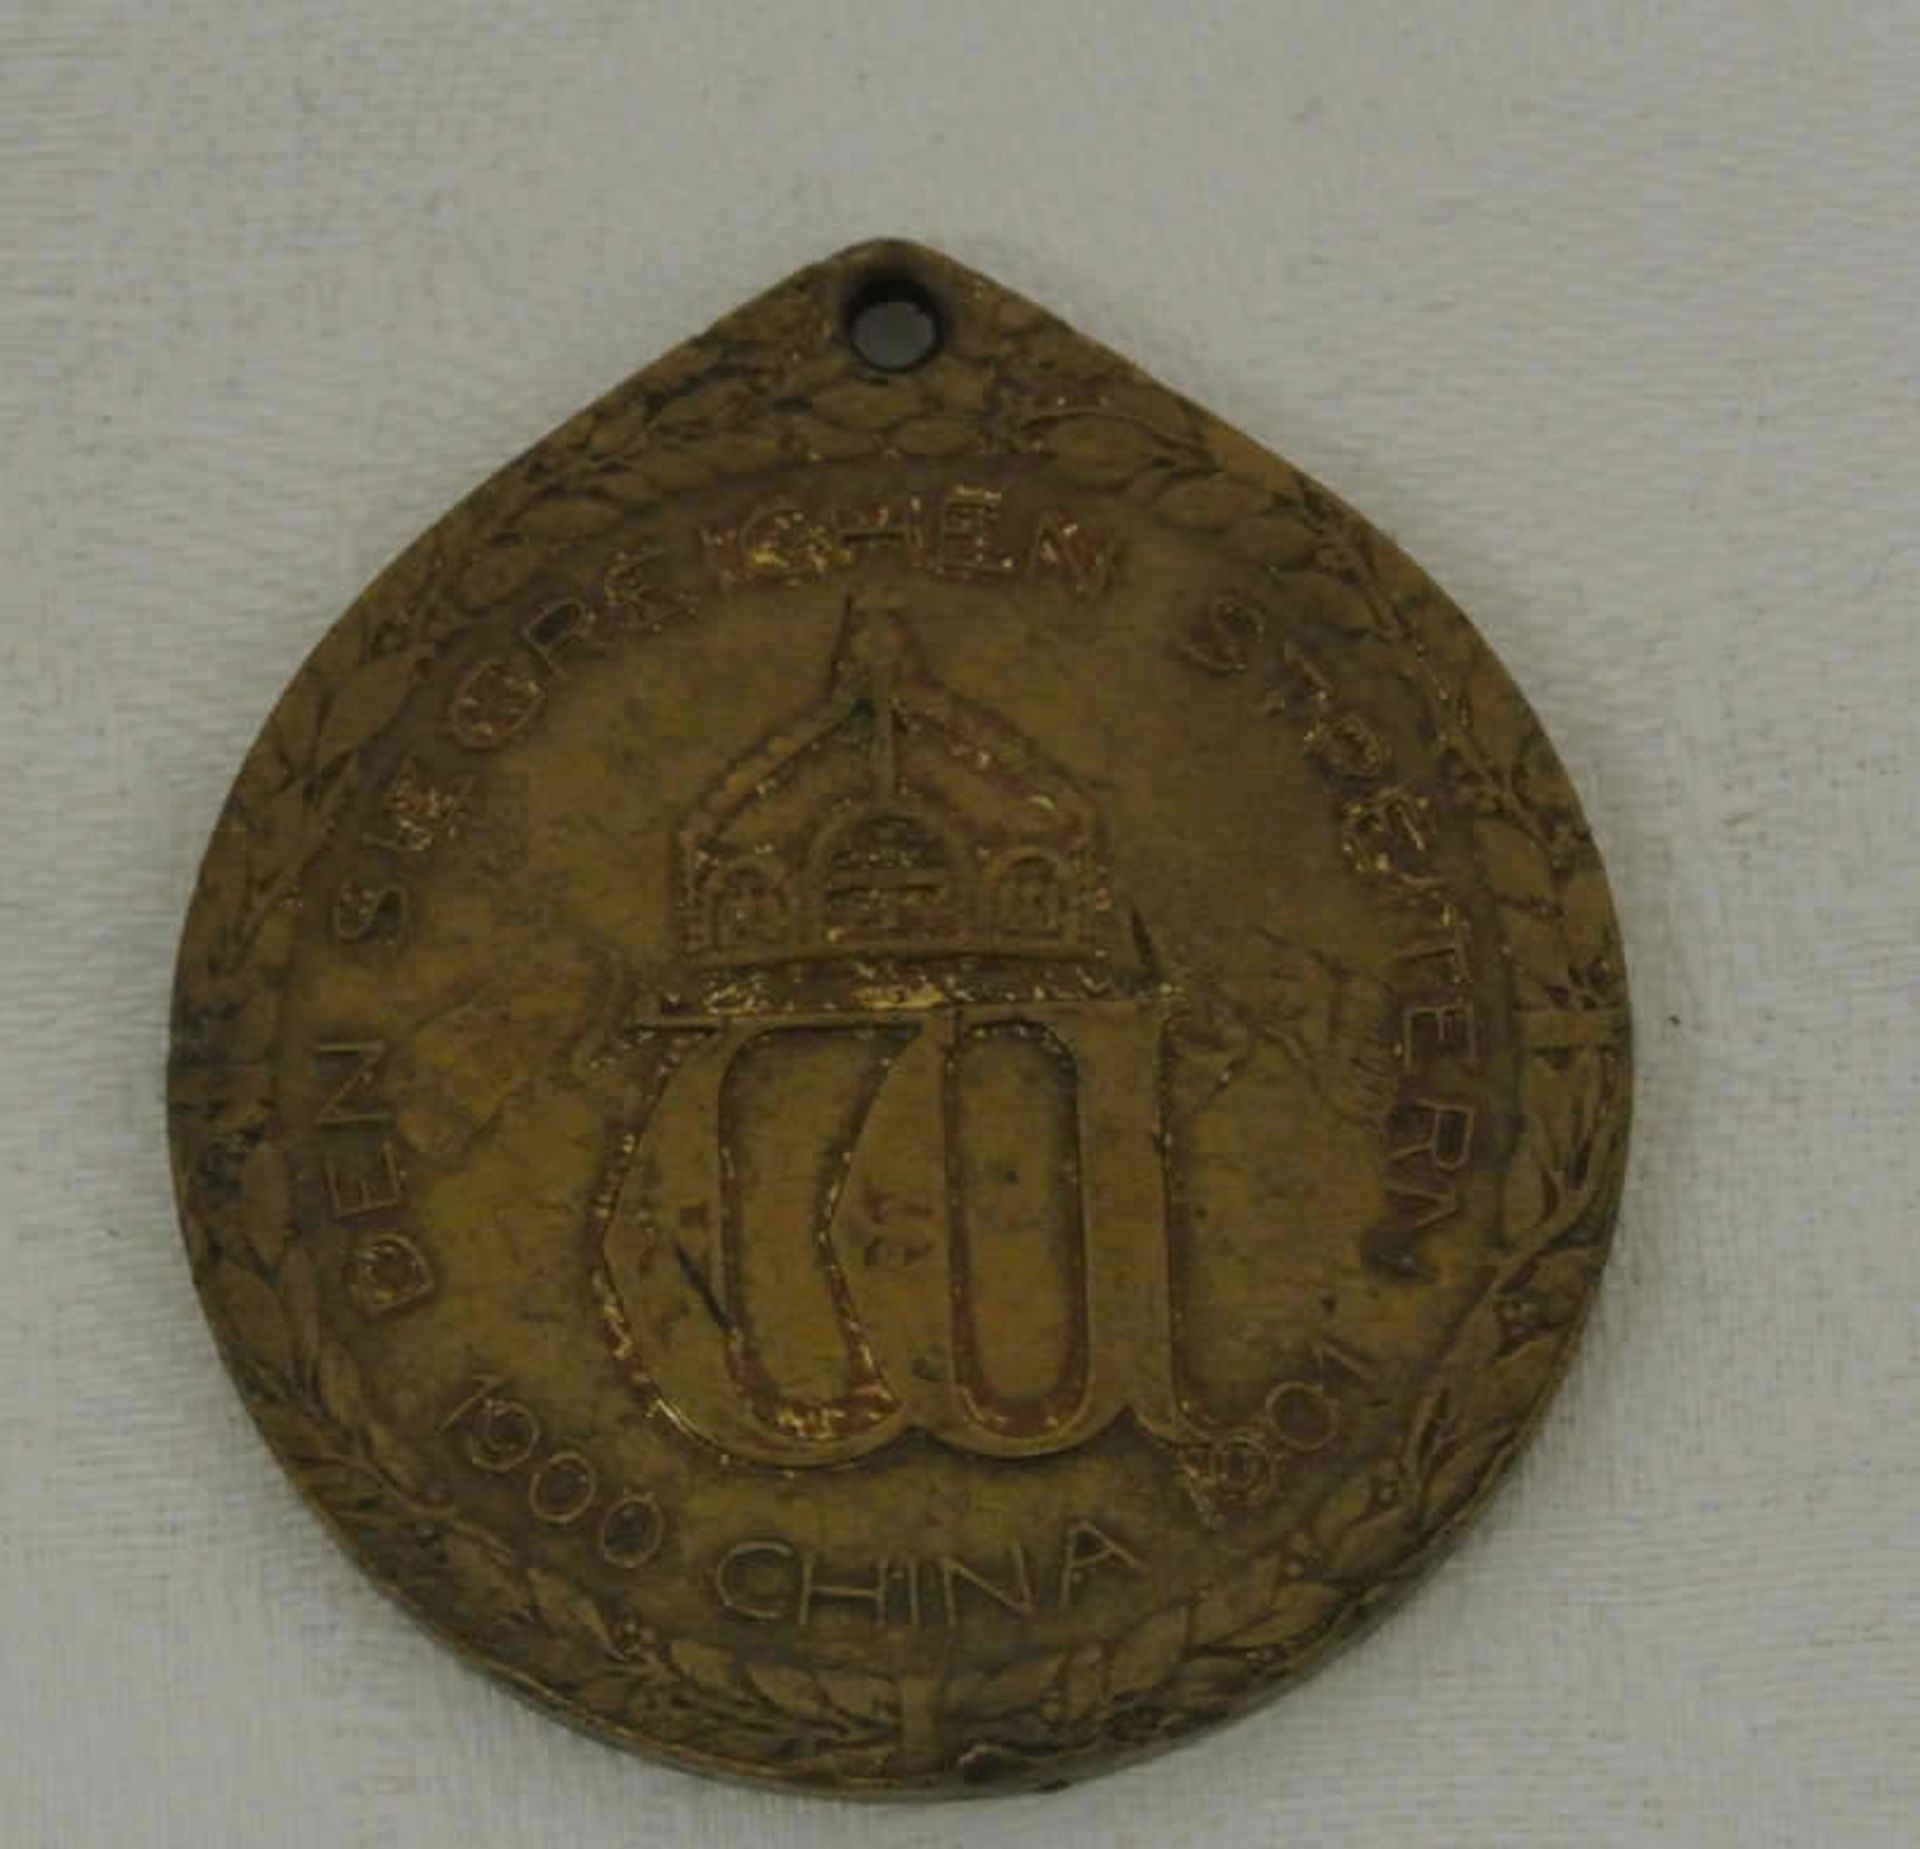 Orden Kaisserreich, Deutsche Kolonie China, China Gedenkmünze für Kämpfer 1901. Bronze vergoldet - Bild 2 aus 2